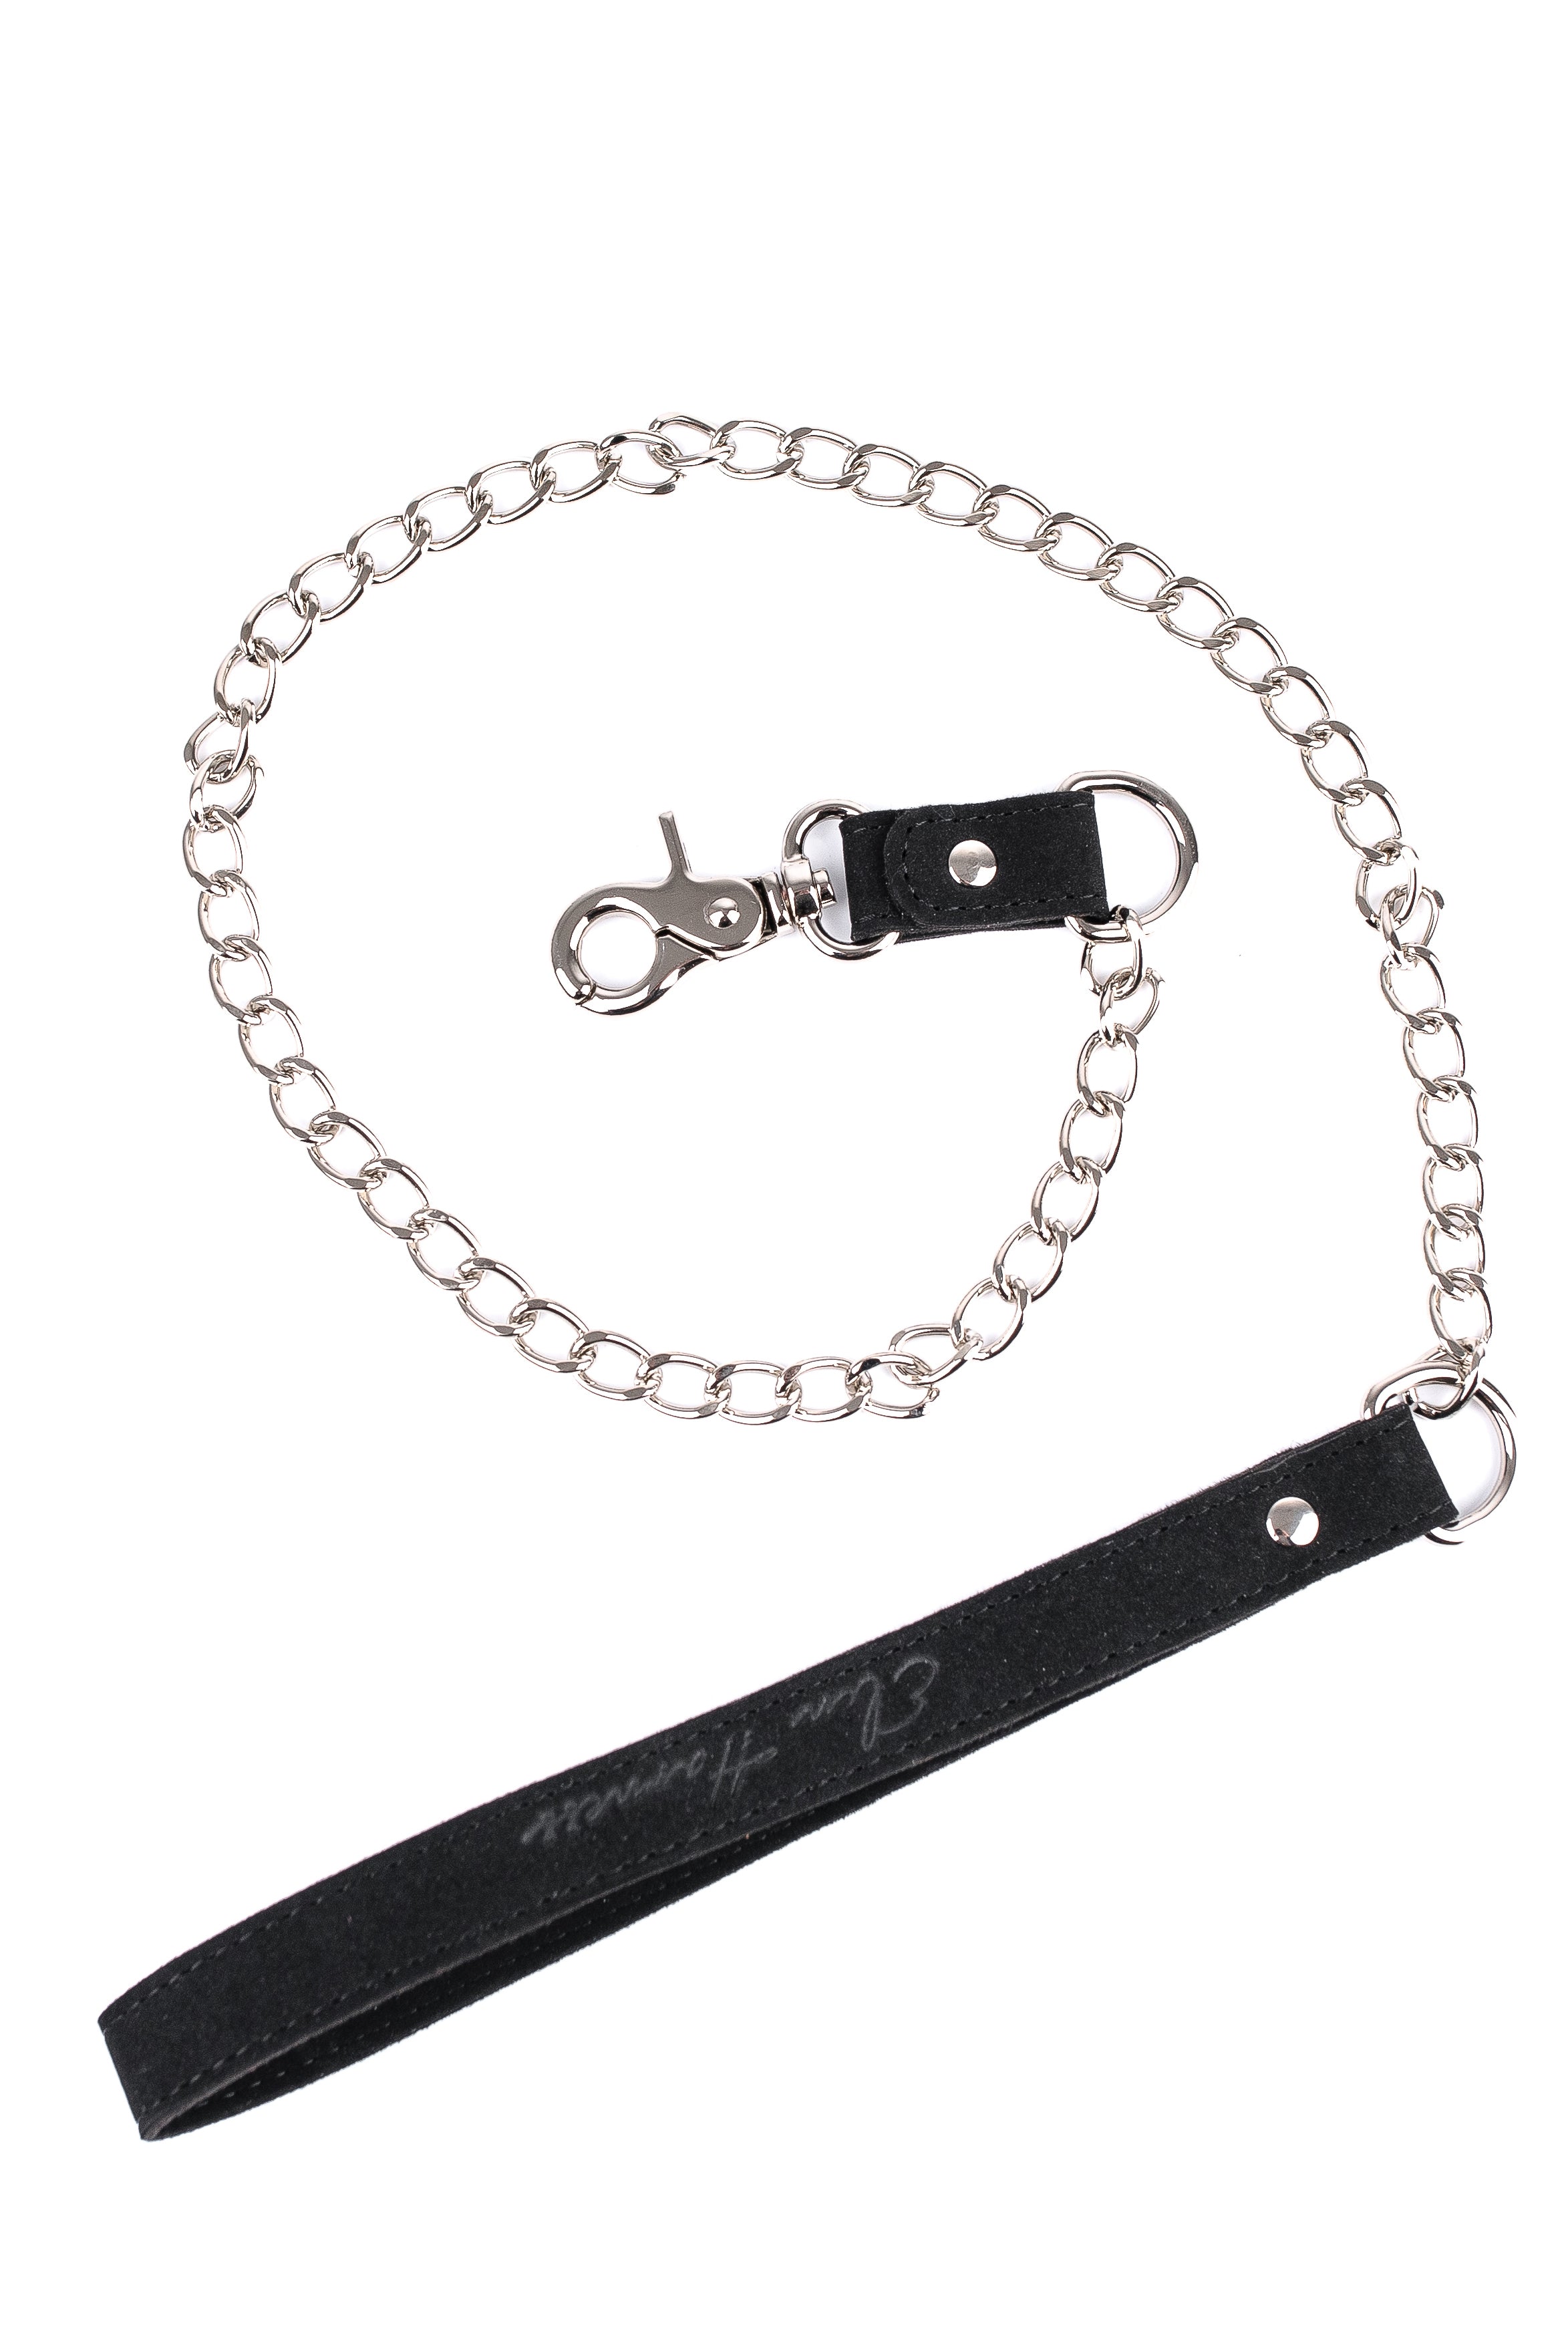 Chain leash